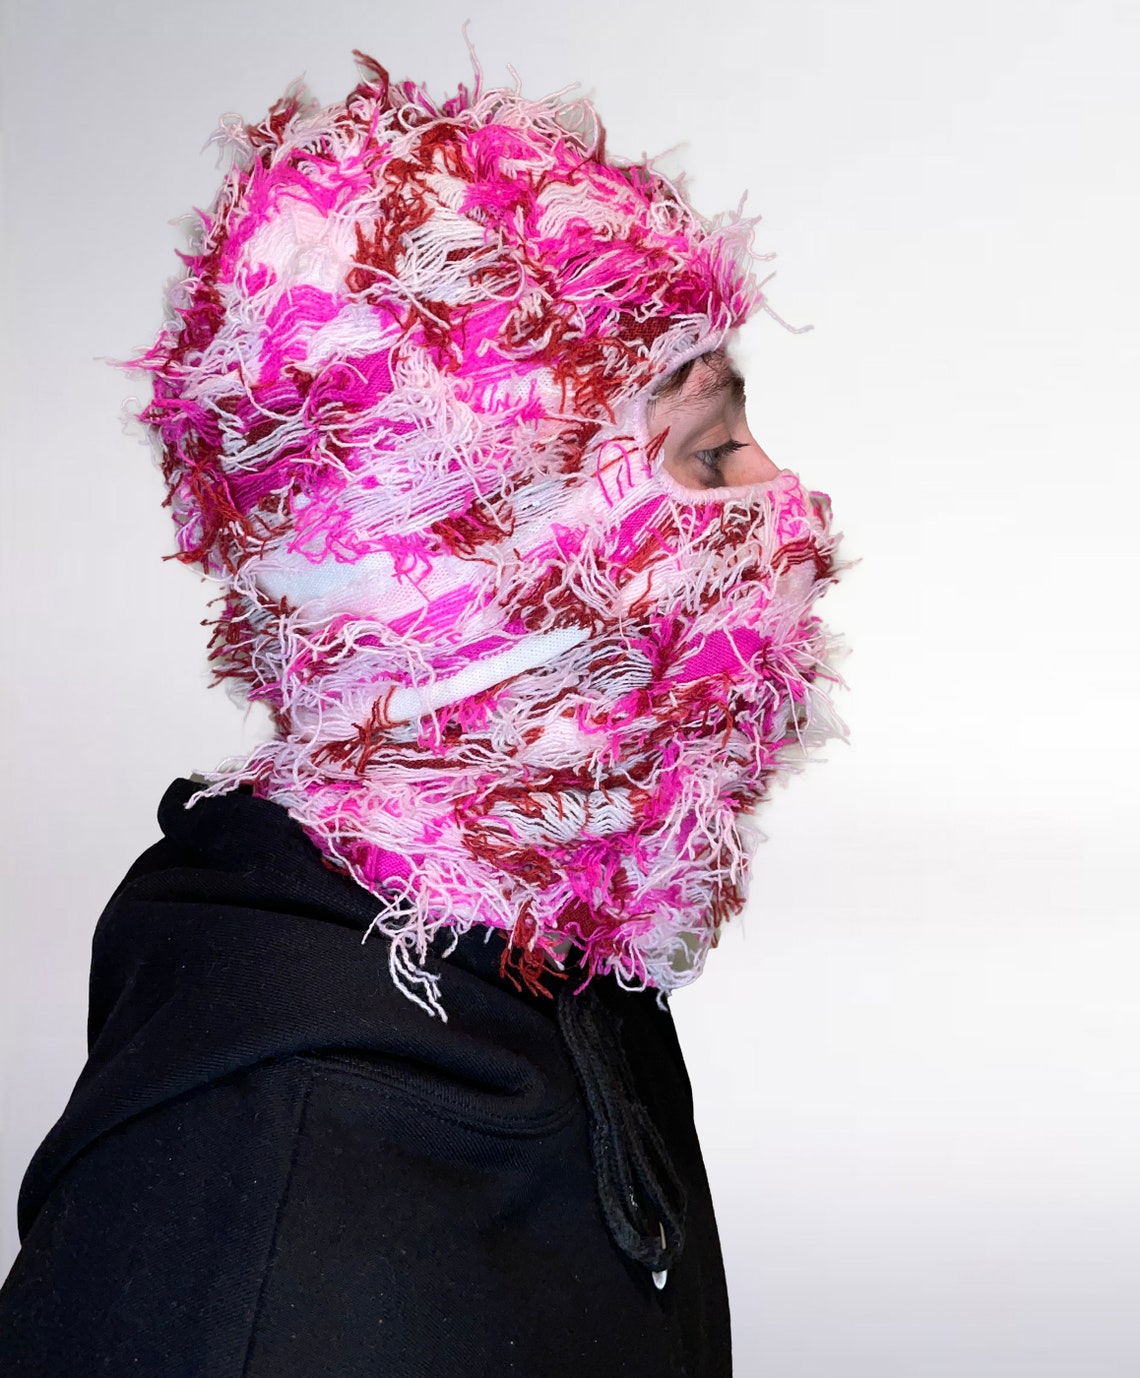 Distressed Balaclava Ski Mask Knitted Shiesty Mask Yeat - Etsy